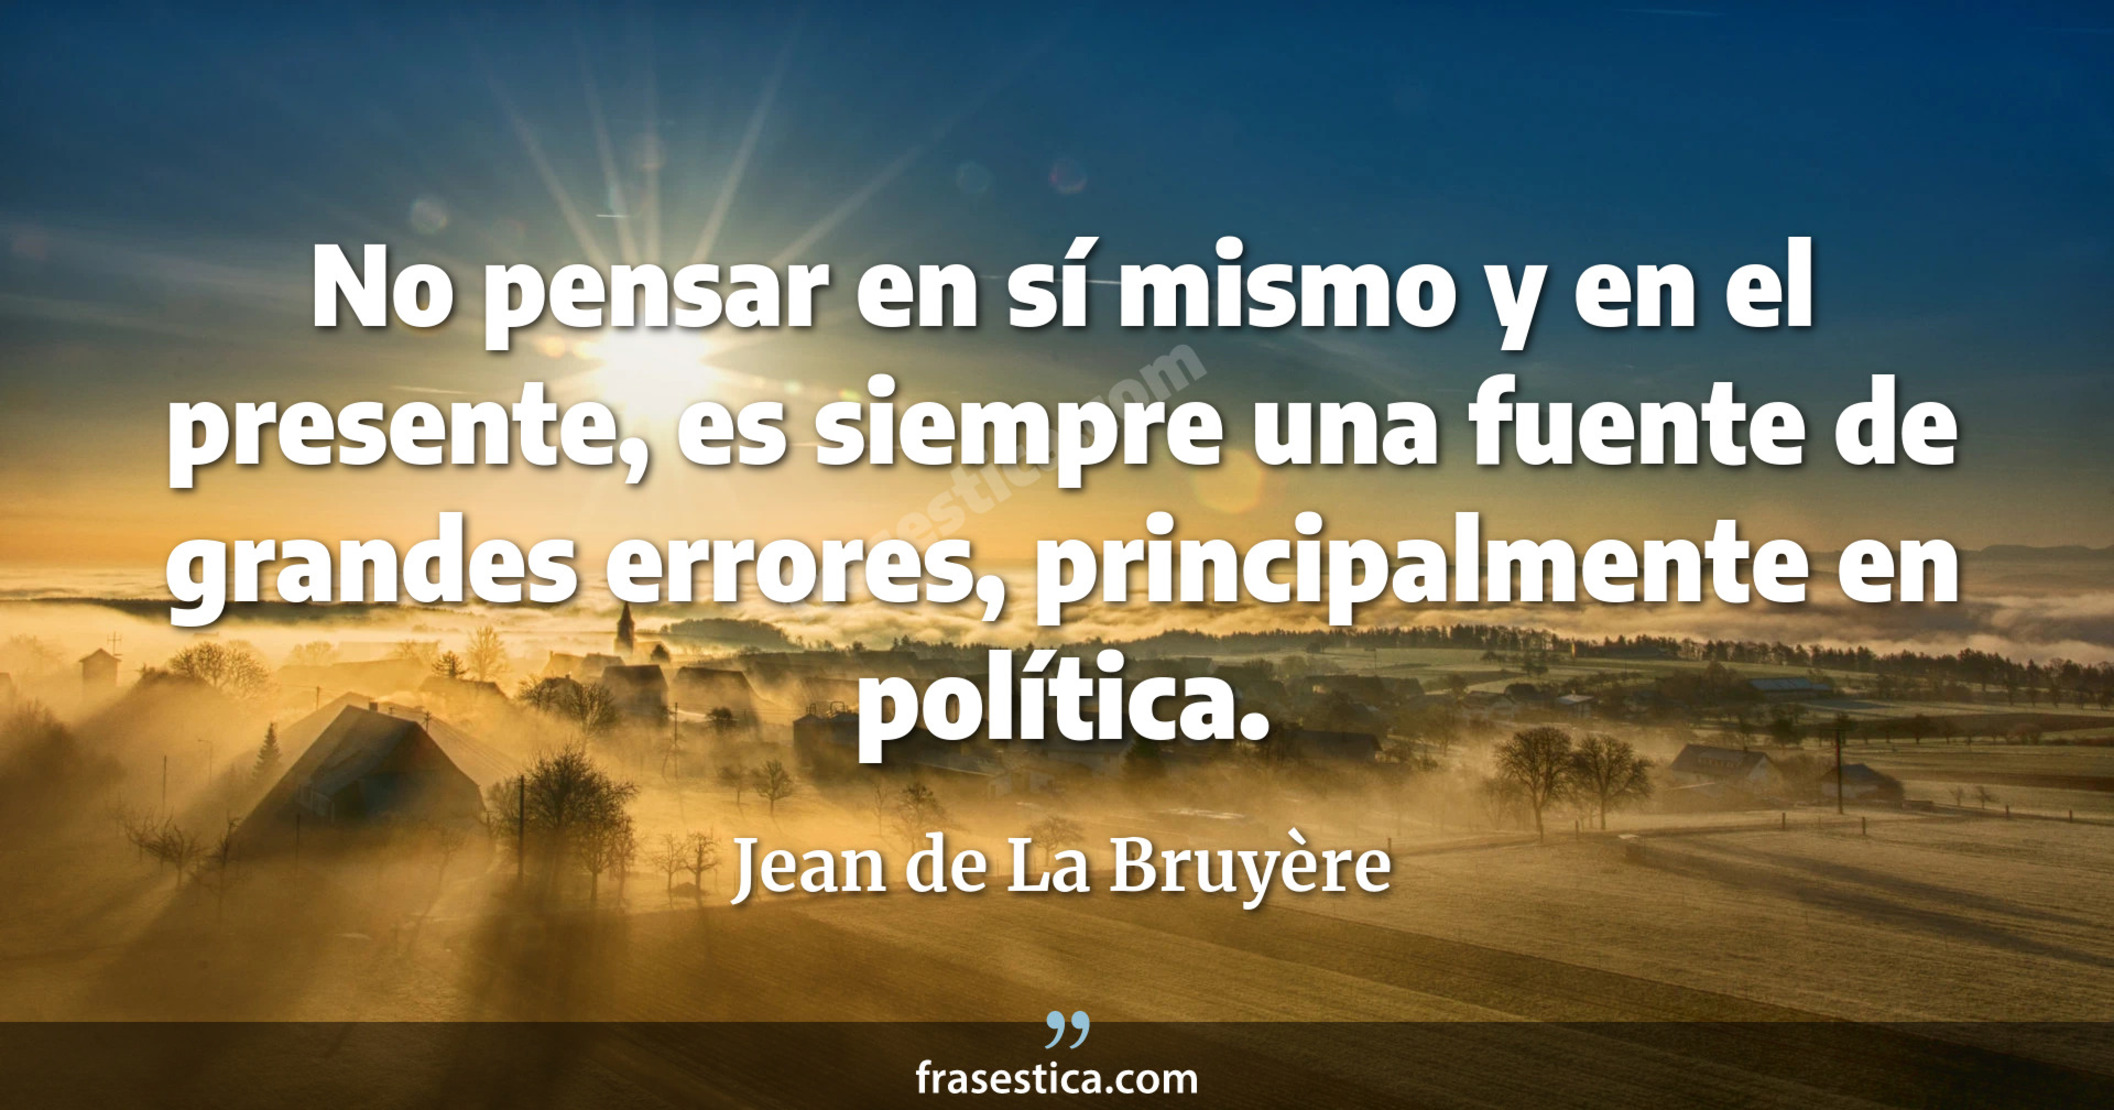 No pensar en sí mismo y en el presente, es siempre una fuente de grandes errores, principalmente en política. - Jean de La Bruyère